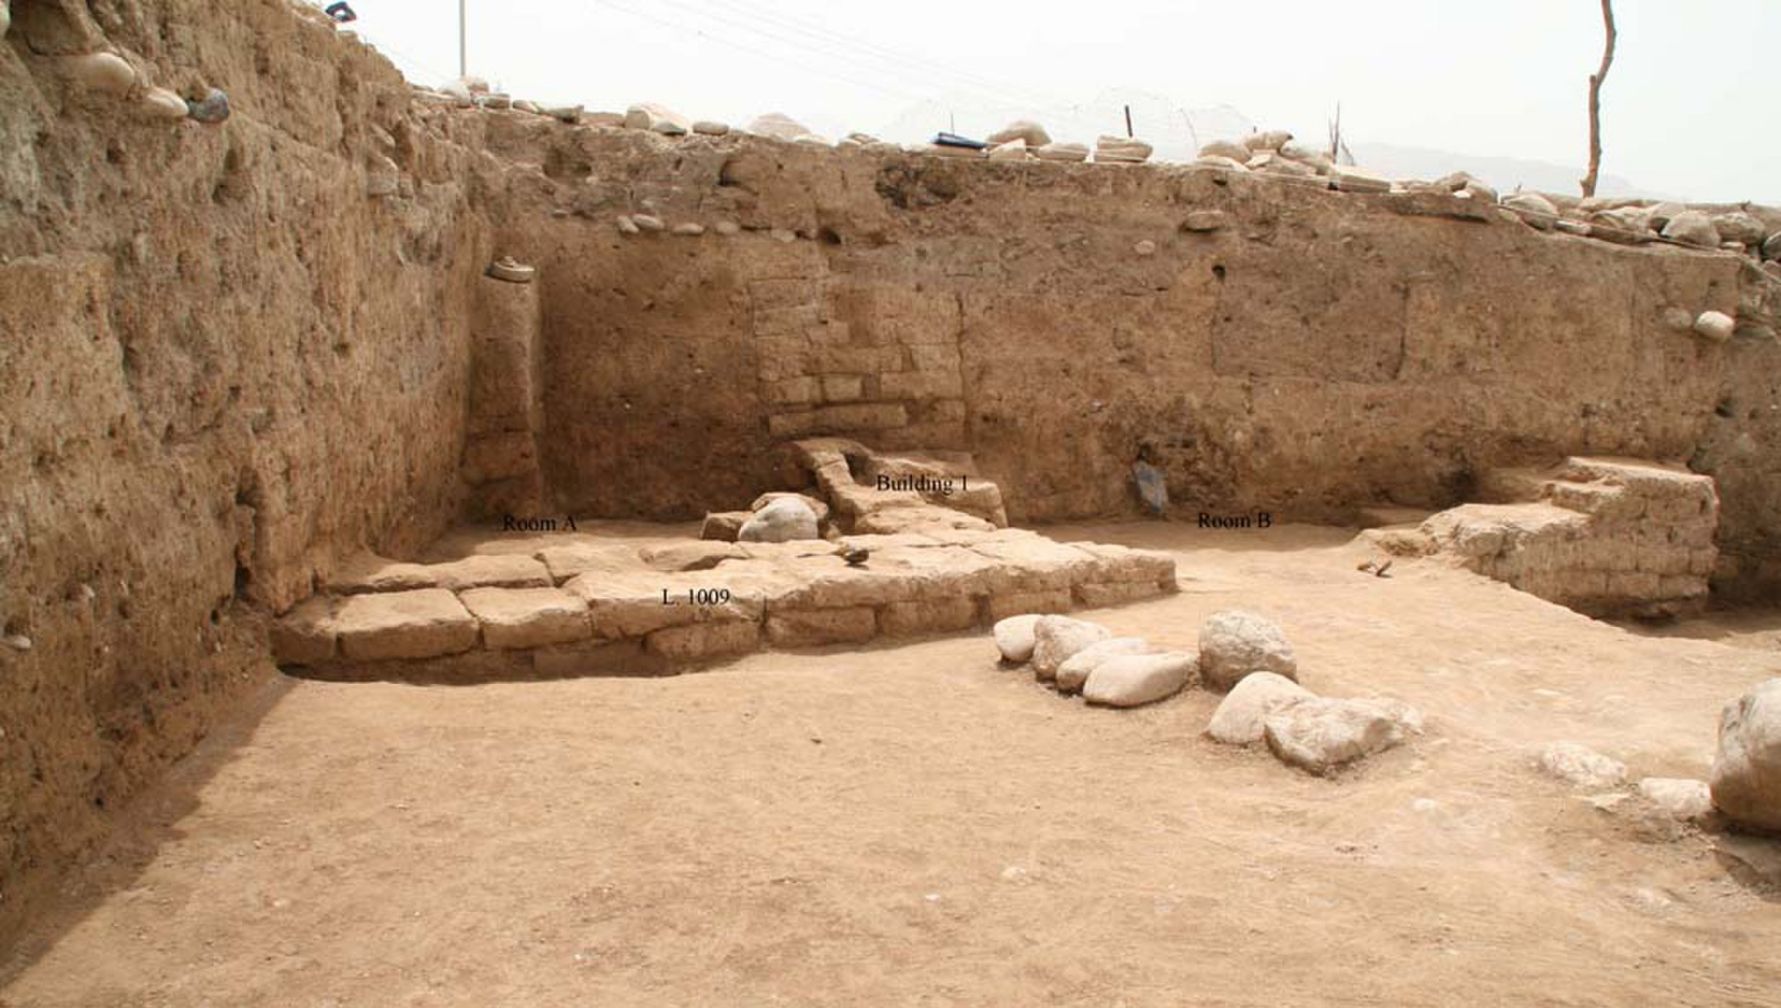 ჩრდილოეთ ერაყის ქურთისტანის რეგიონში არქეოლოგებმა აღმოაჩინეს უძველესი ქალაქი, რომელსაც "იდუ" ერქვა. ეს ადგილი ჯერ კიდევ ნეოლითის ხანაში იყო დაკავებული, როდესაც მეურნეობა პირველად გამოჩნდა ახლო აღმოსავლეთში და ქალაქმა მიაღწია თავის უდიდეს მასშტაბებს 3,300-დან 2,900 წლამდე. აქ ნაჩვენები შენობა არის საყოფაცხოვრებო ნაგებობა, სულ მცირე ორი ოთახით, რომელიც შეიძლება თარიღდეს ქალაქის სიცოცხლის შედარებით გვიან, შესაძლოა დაახლოებით 2,000 წლის წინ, როდესაც პართიის იმპერია აკონტროლებდა ამ ტერიტორიას.